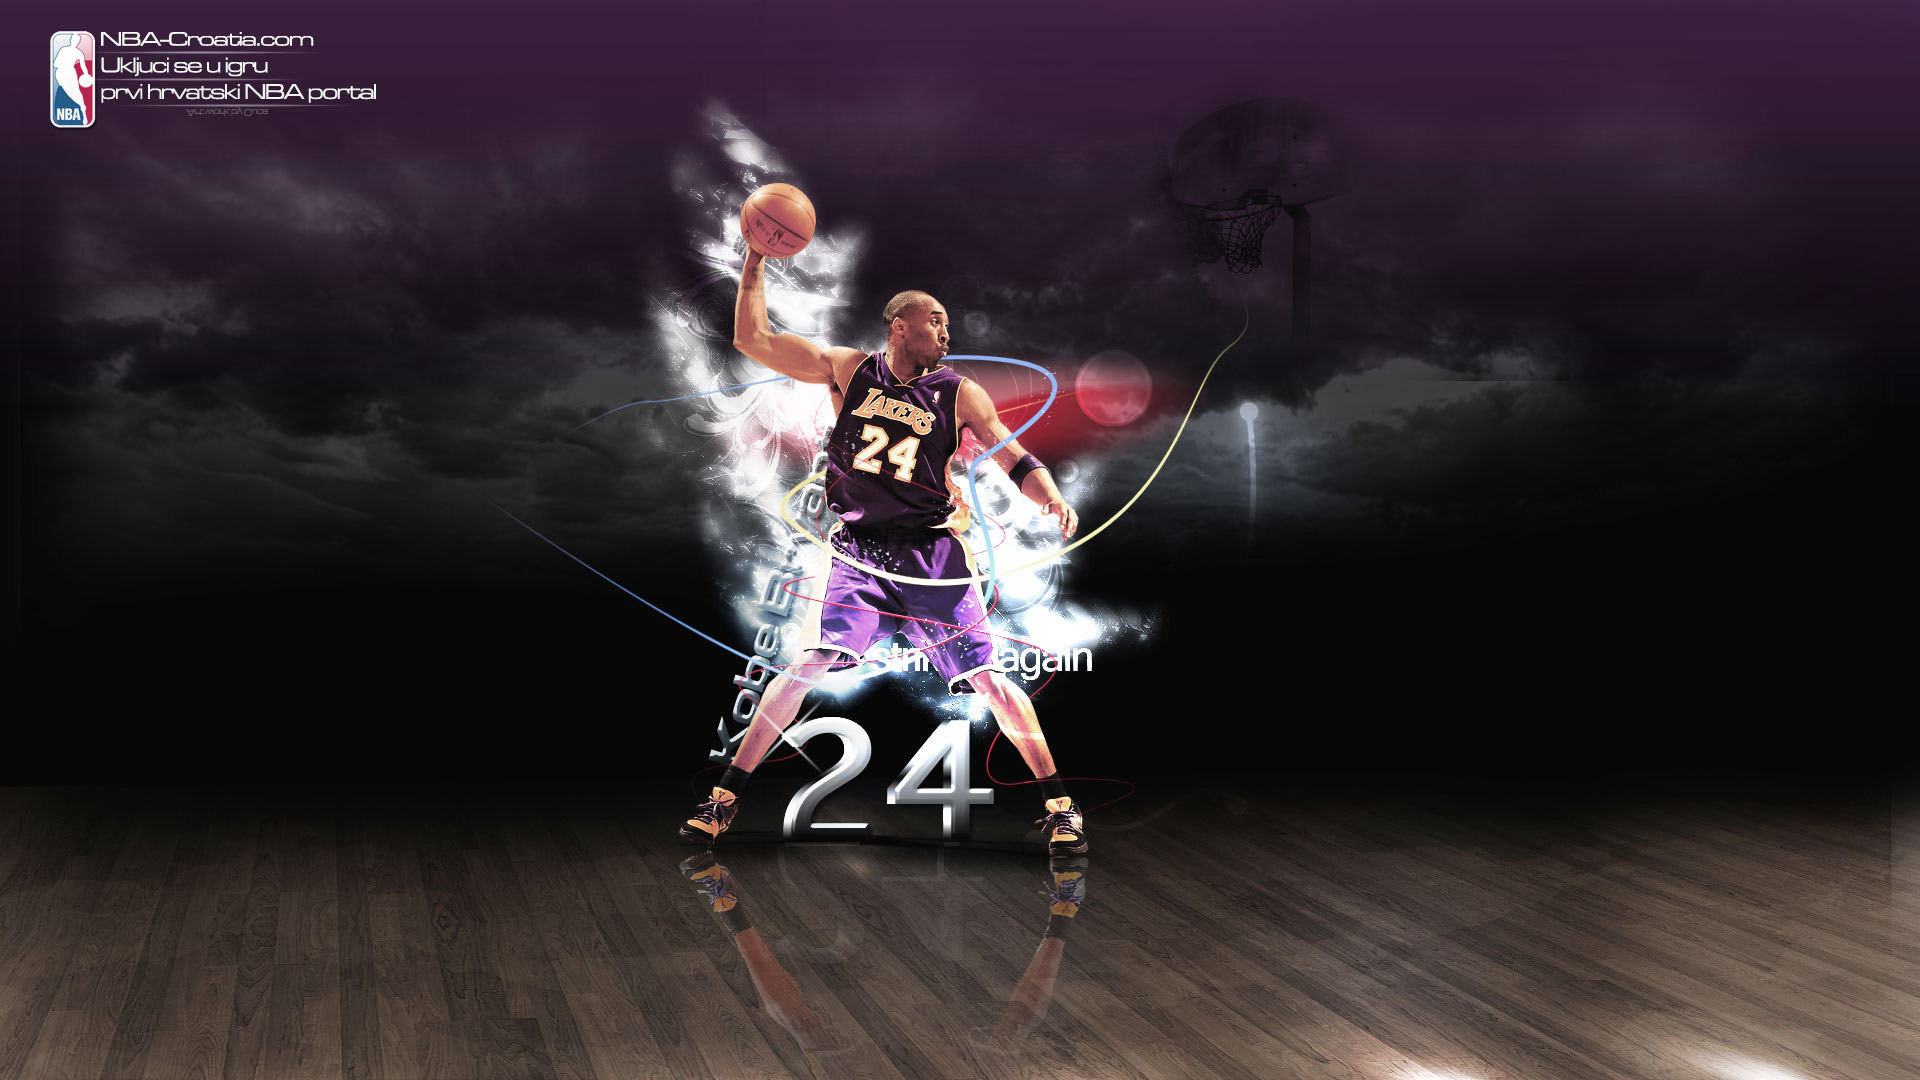 NBA Legends Wallpaper (72+ images)